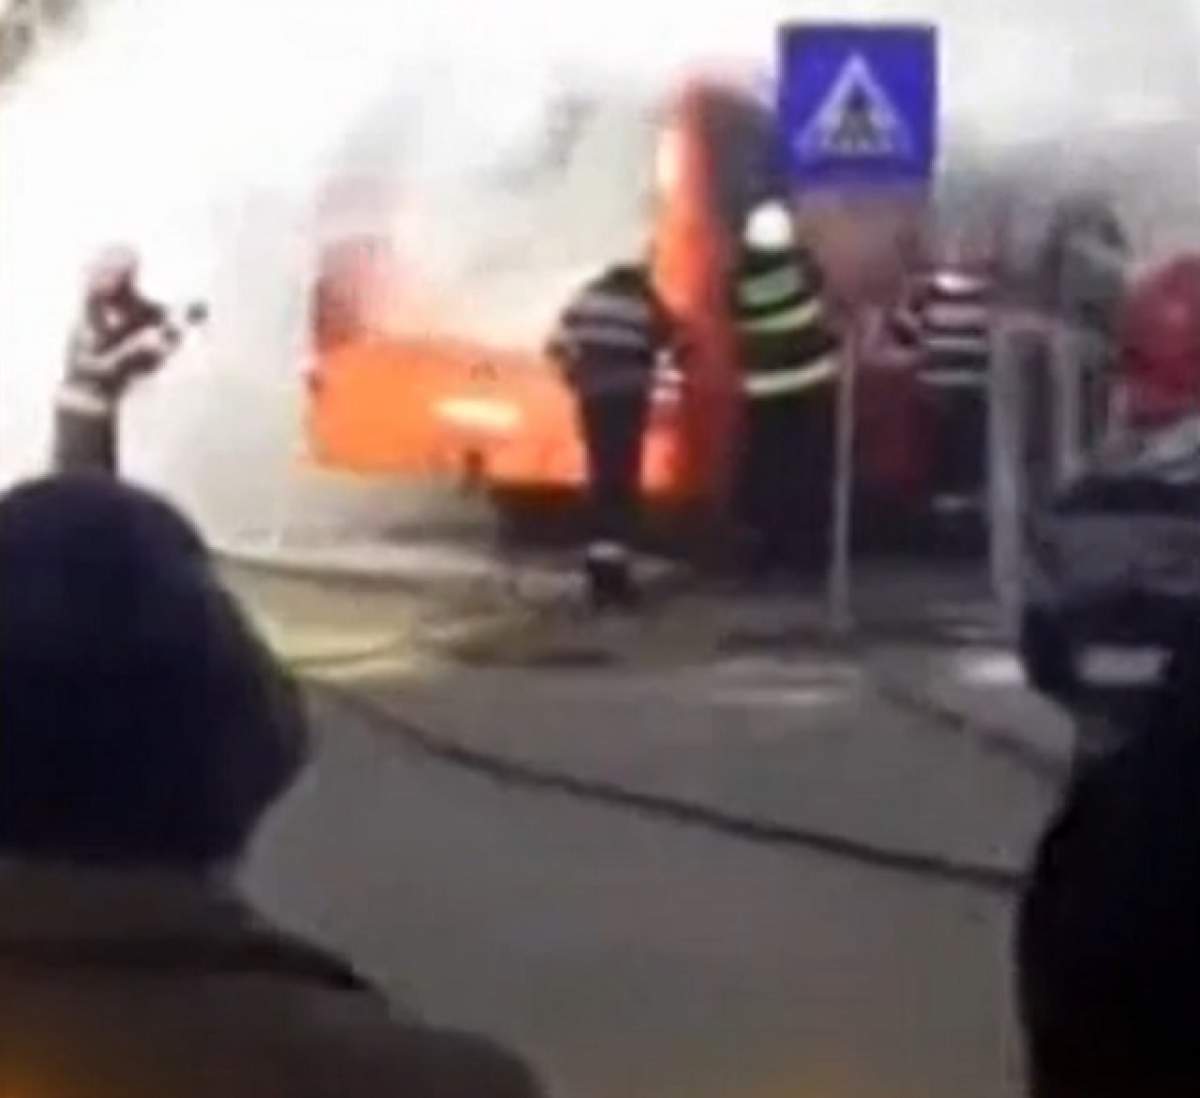 VIDEO / Ultima oră! Un microbuz plin cu muncitori a luat foc în Mihăilești, județul Buzău